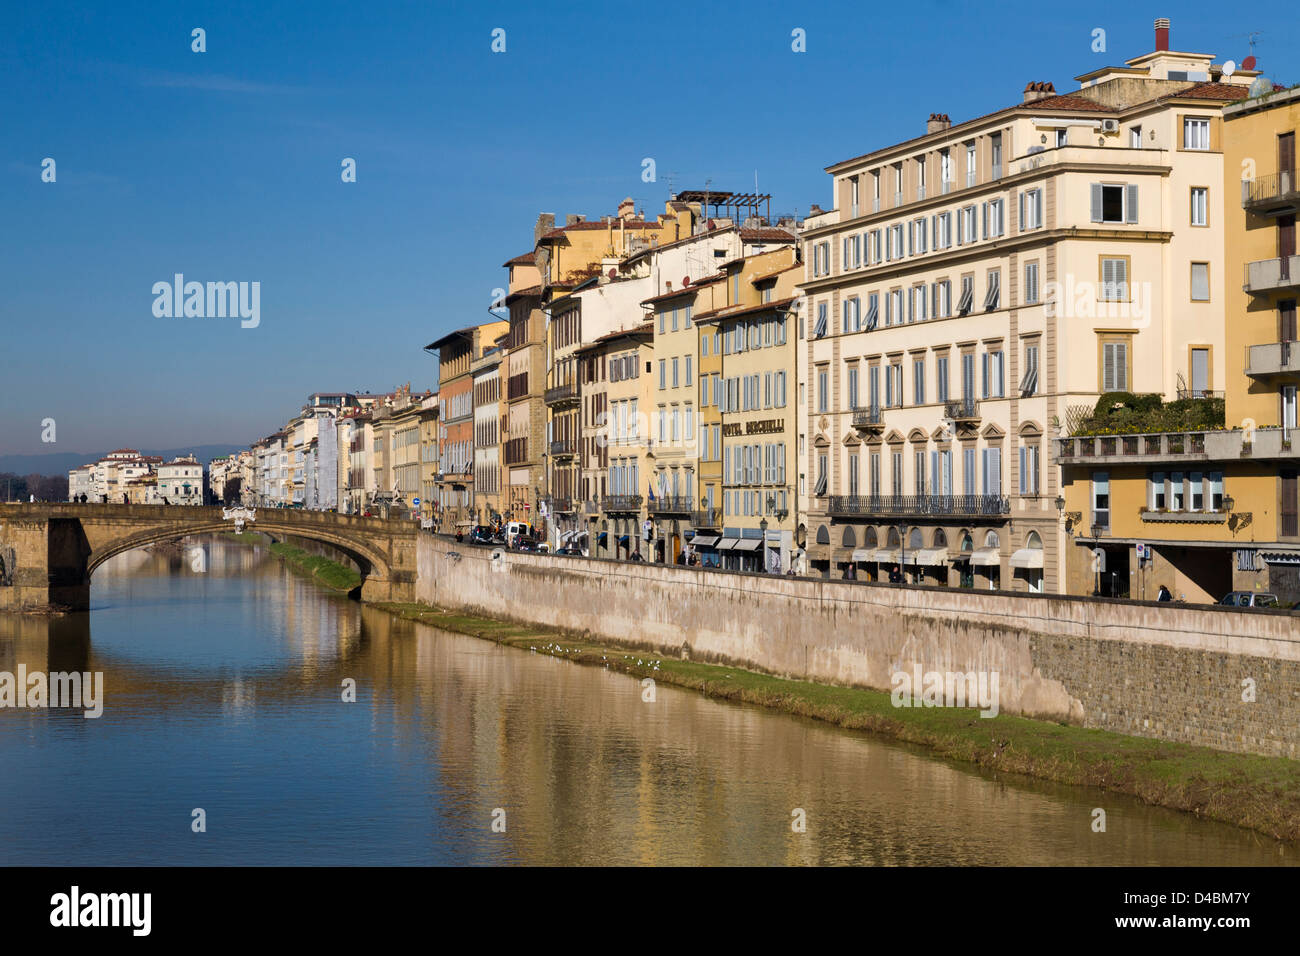 View along the Fiume Arno towards the Ponte Santa Trinita from Ponte Vecchio, Florence, Italy. Stock Photo